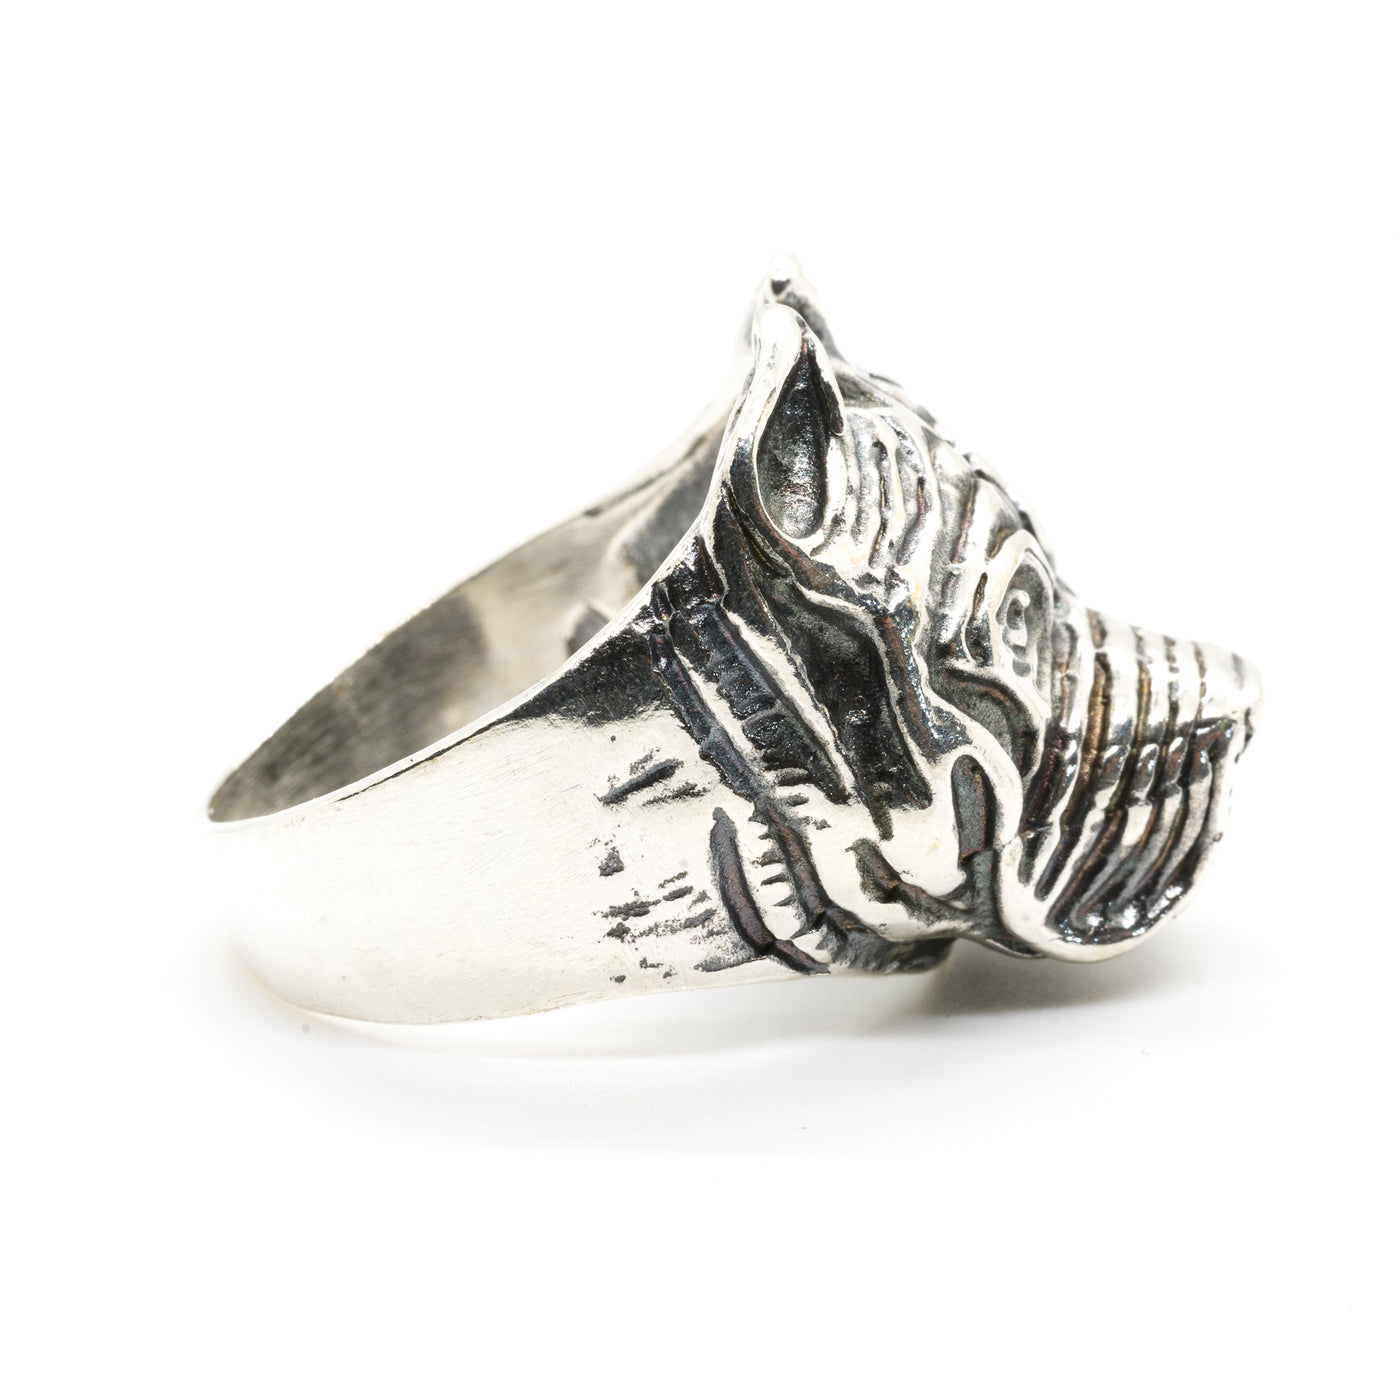 Bulldog/Bull Mastiff Dog Head Ring - .925 Sterling Silver